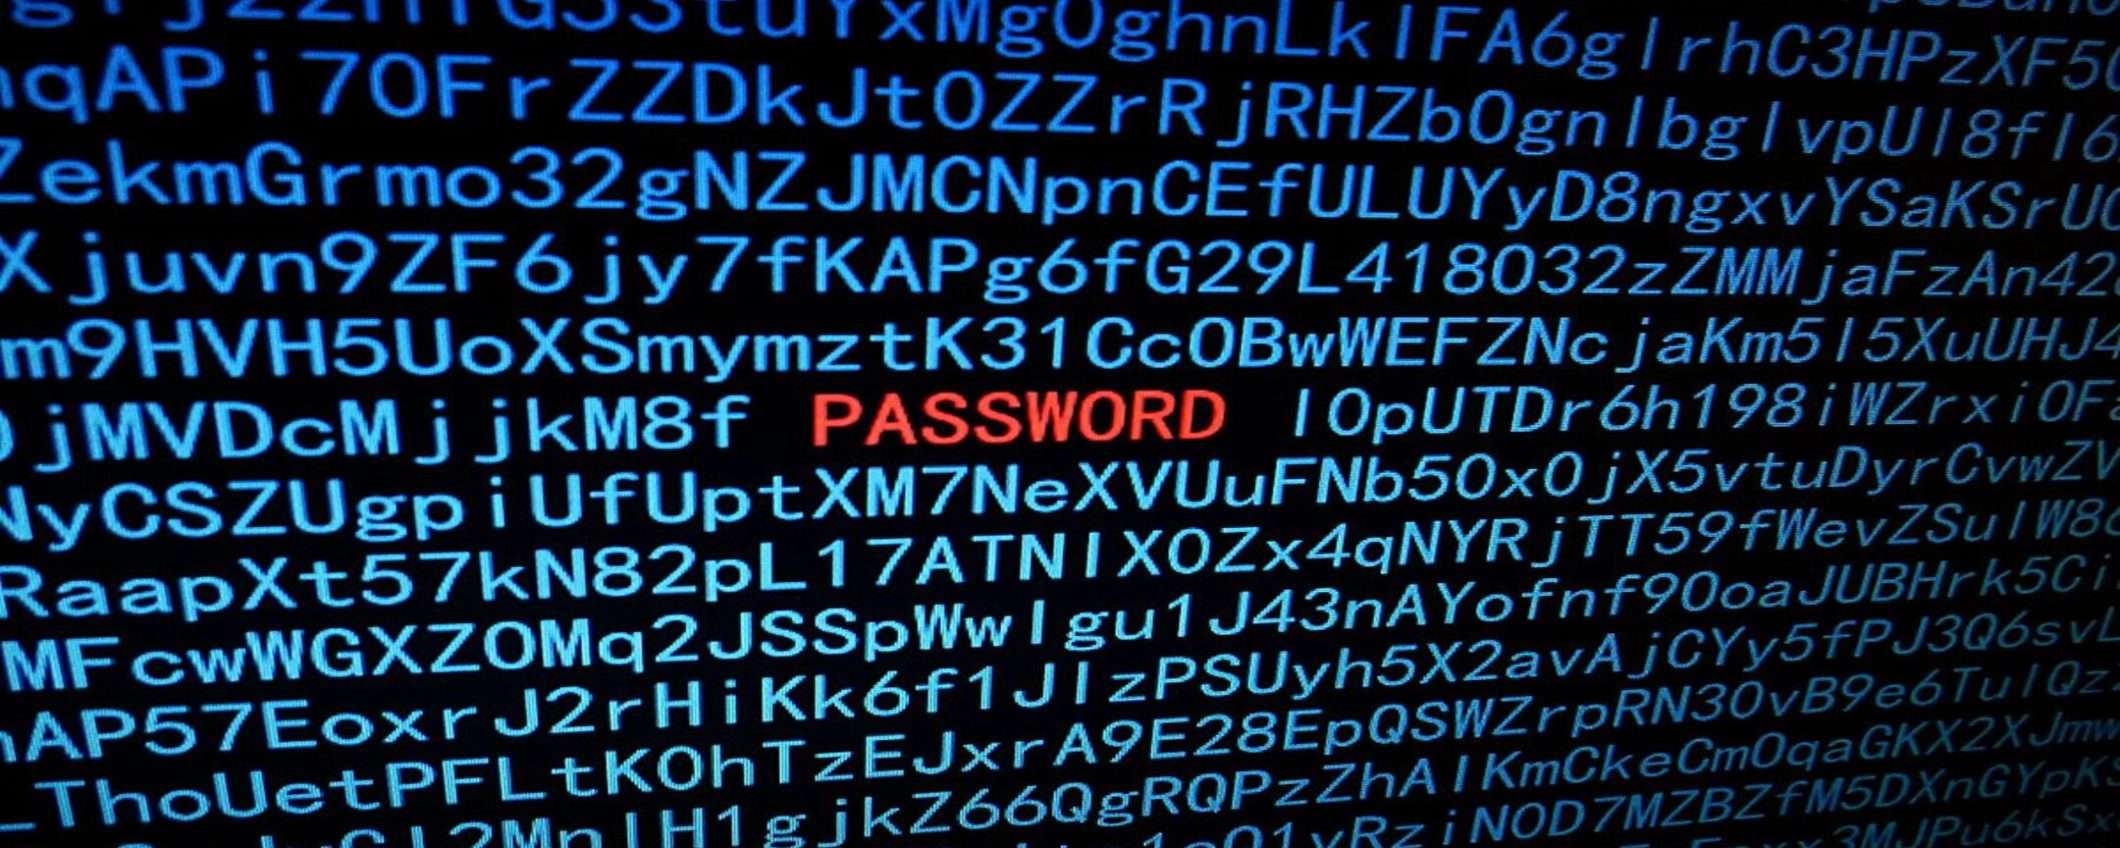 LastPass: esportare le password è semplicissimo